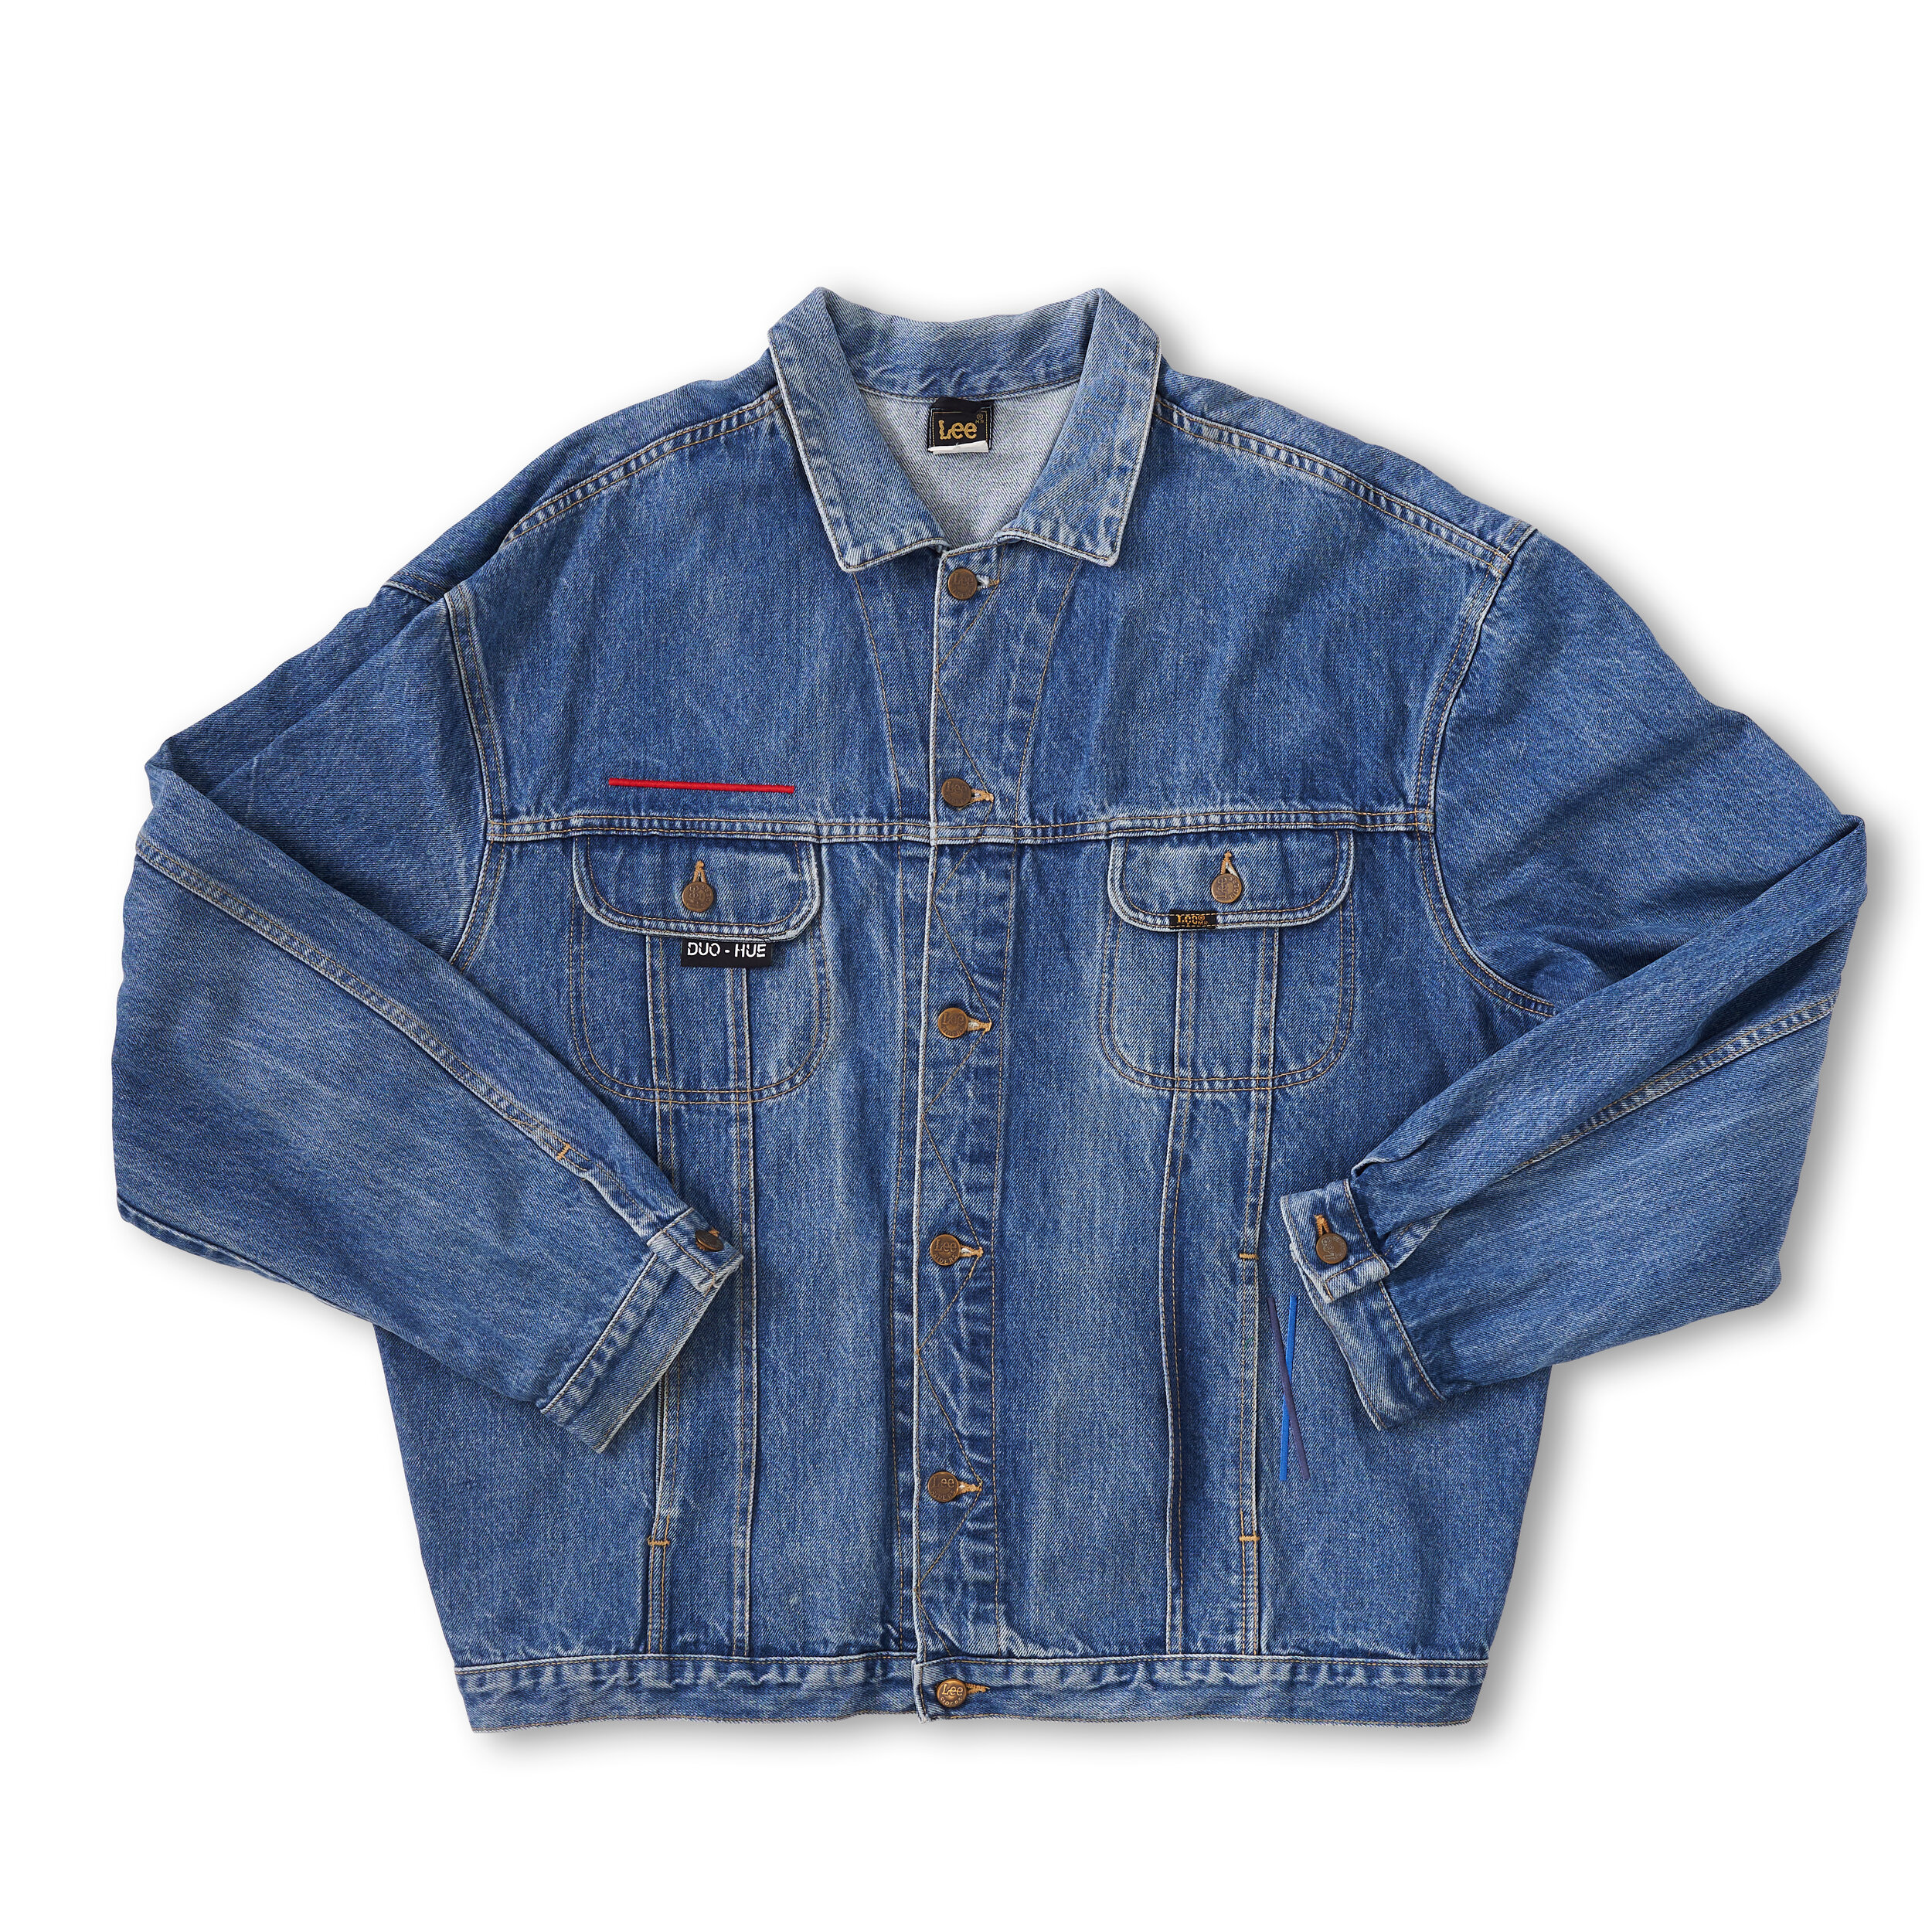 Vintage Embroidered Levis Denim Jacket Washed Royal — DUO-HUE